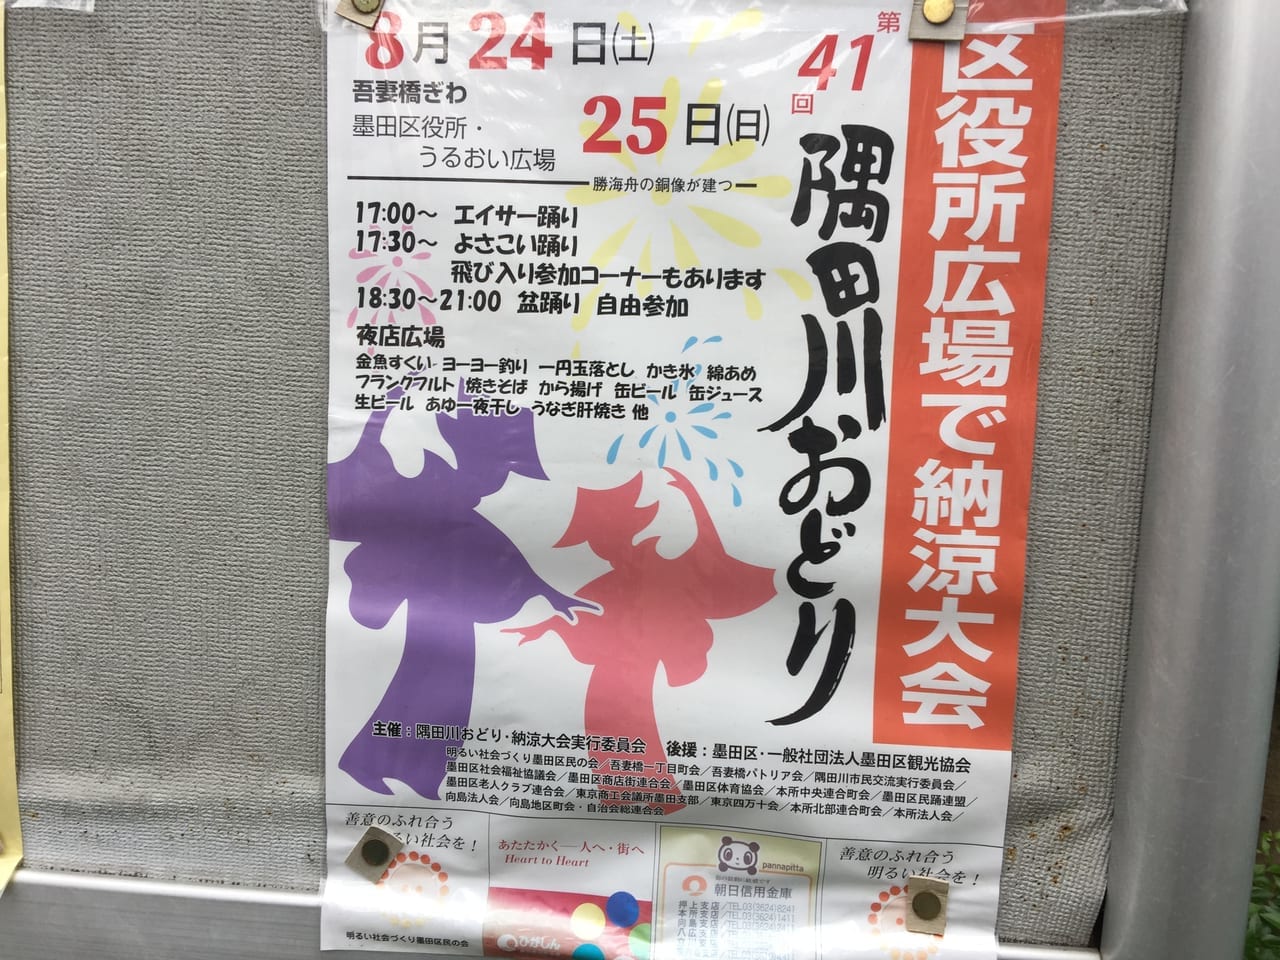 隅田川踊りポスター